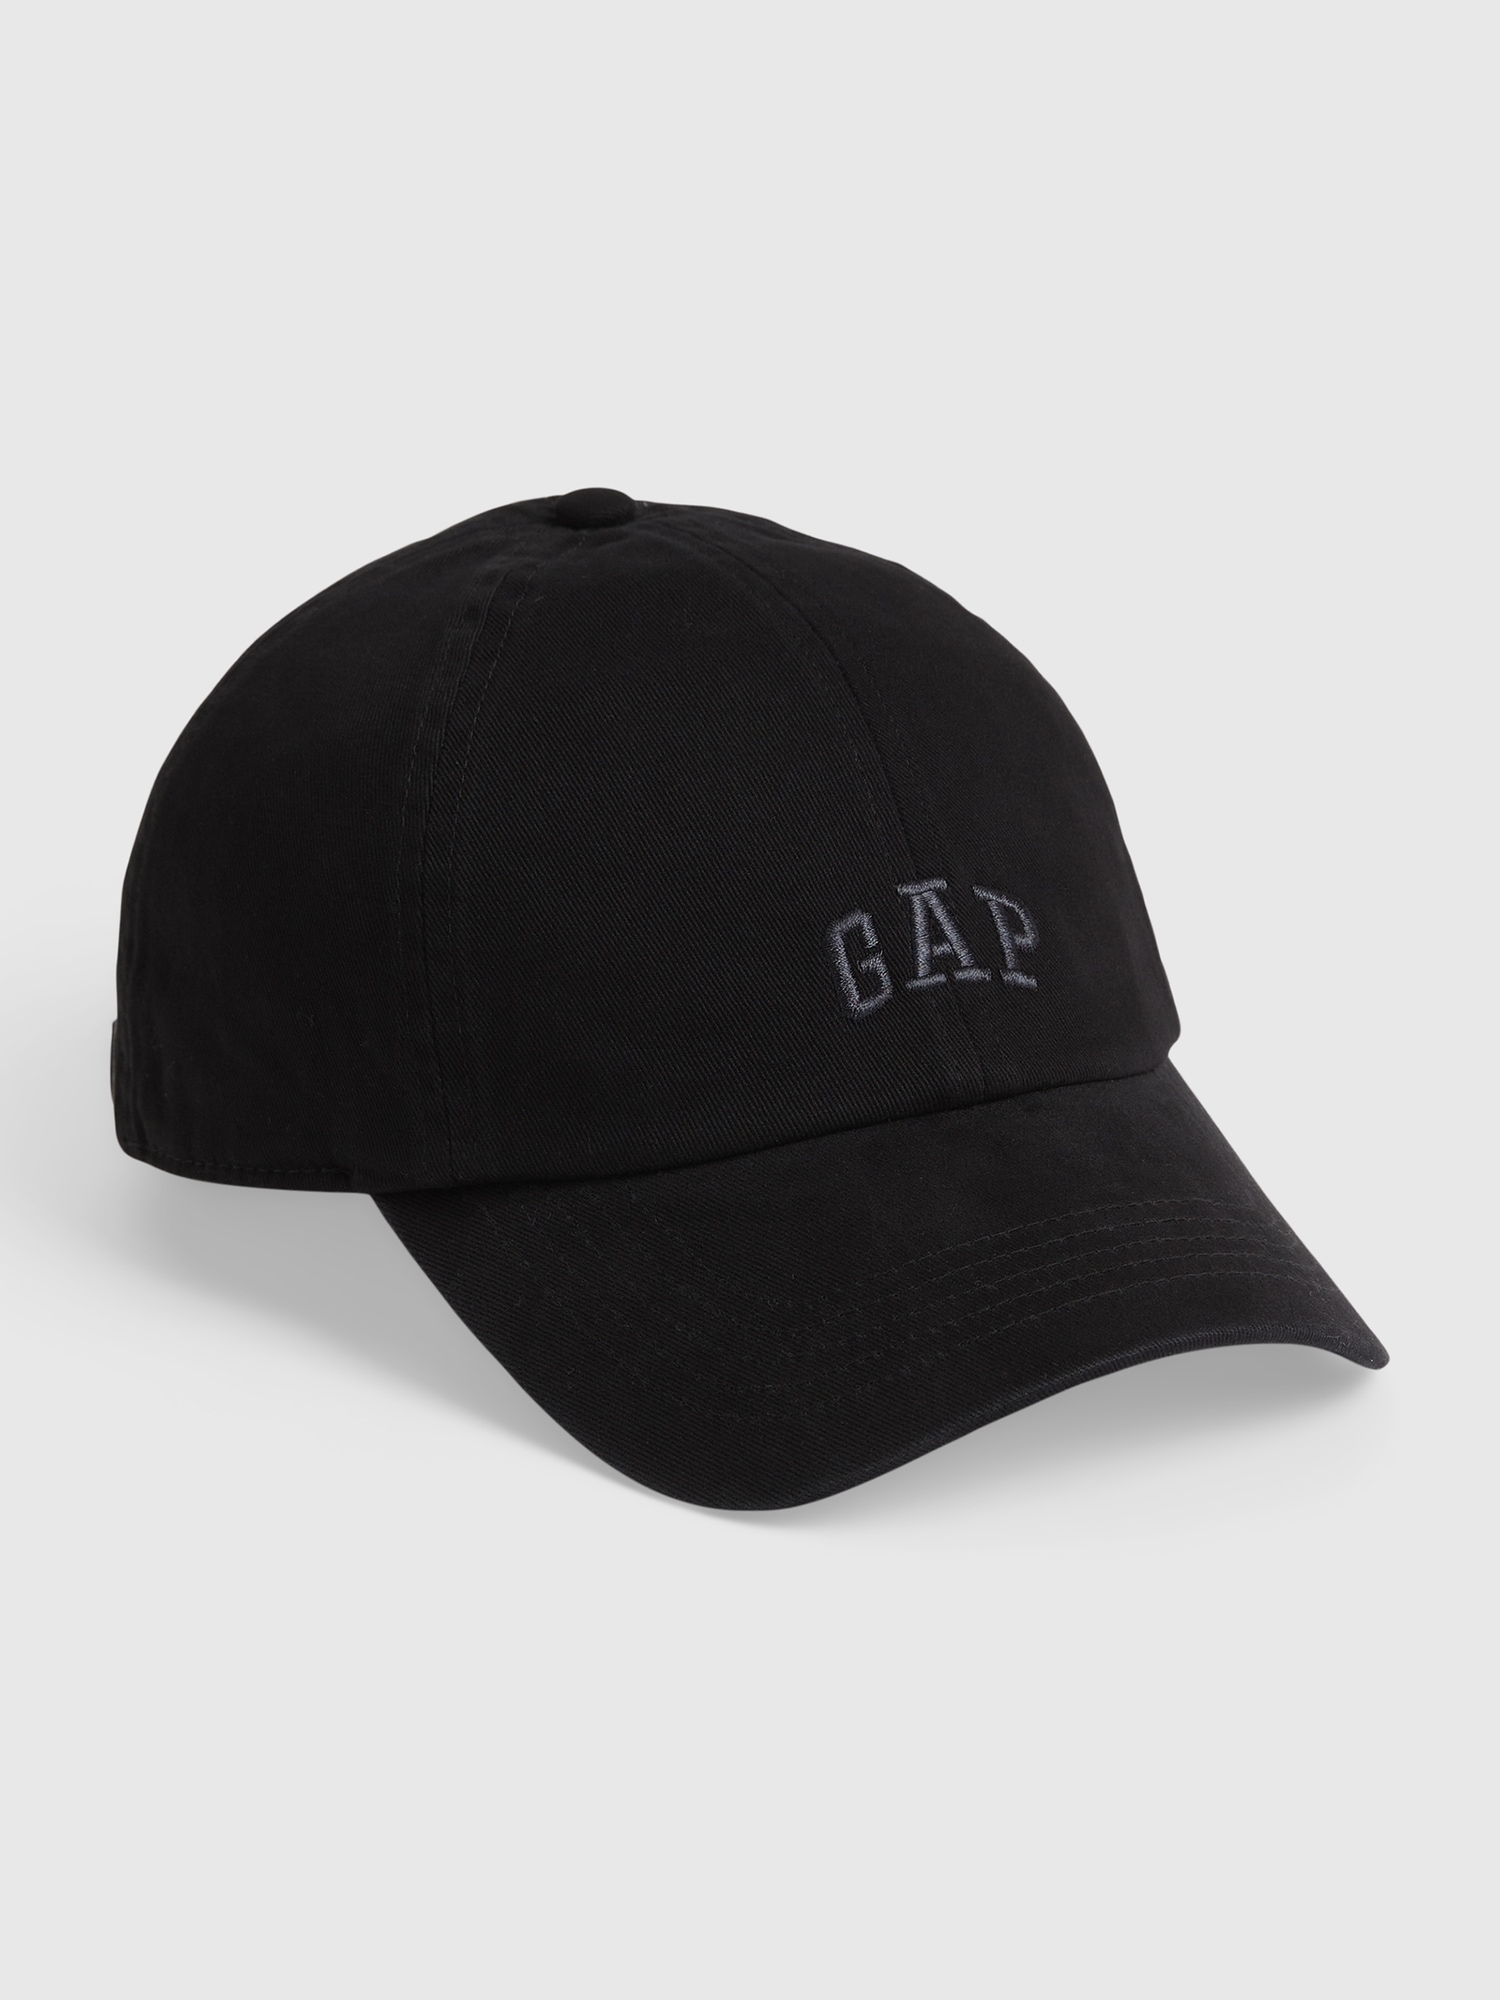 Gap Logo Baseball Hat black. 1